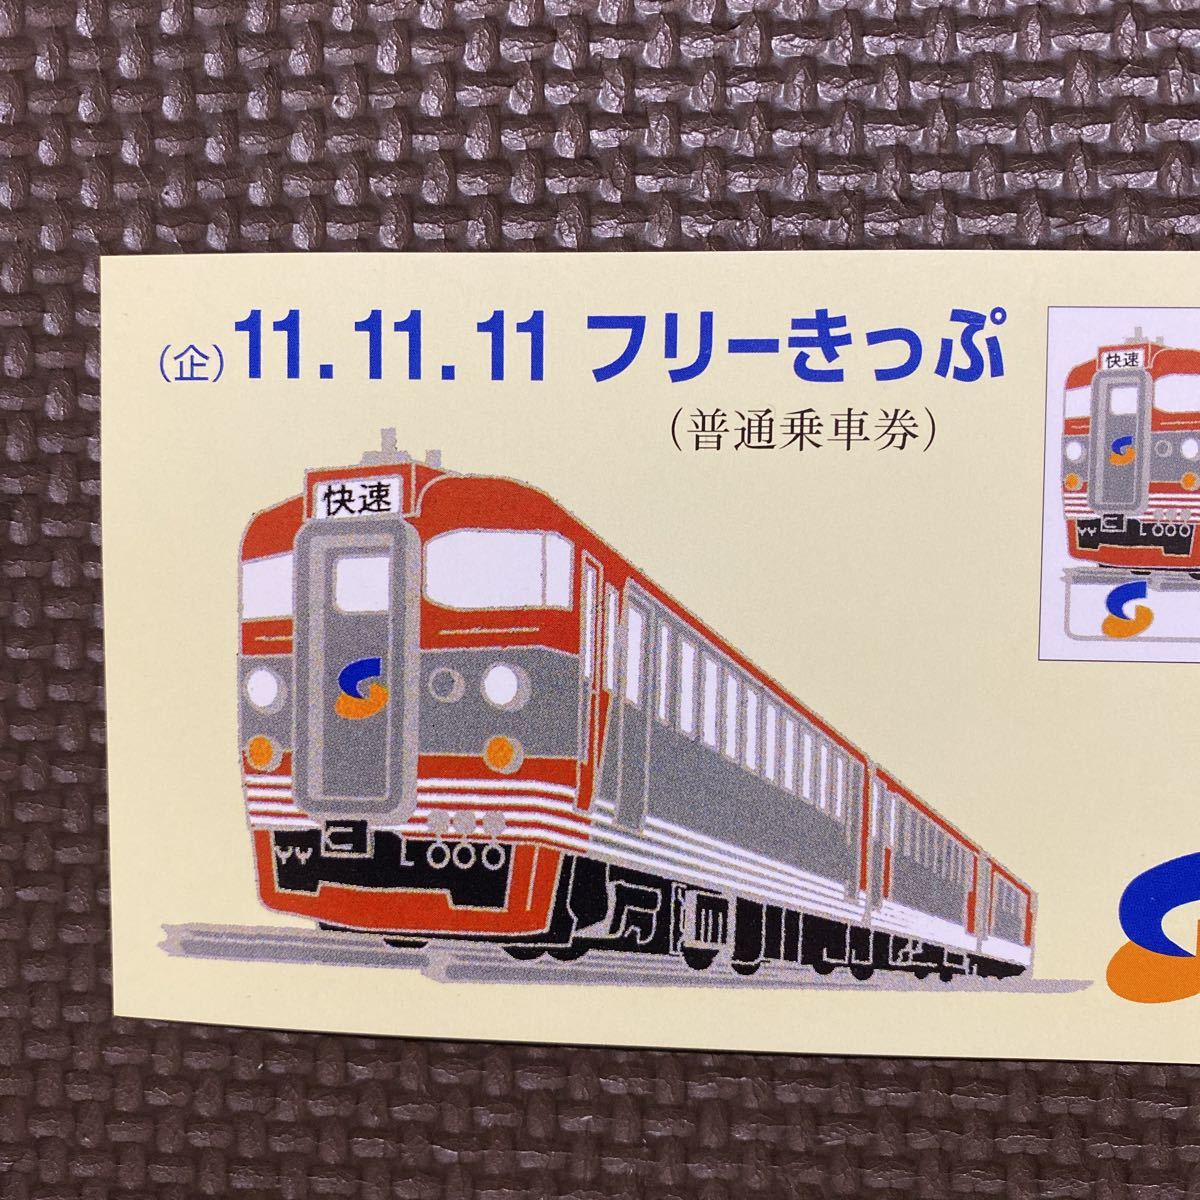 ヤフオク! - しなの鉄道 11.11.11 記念乗車券 小児 軽井沢 篠...